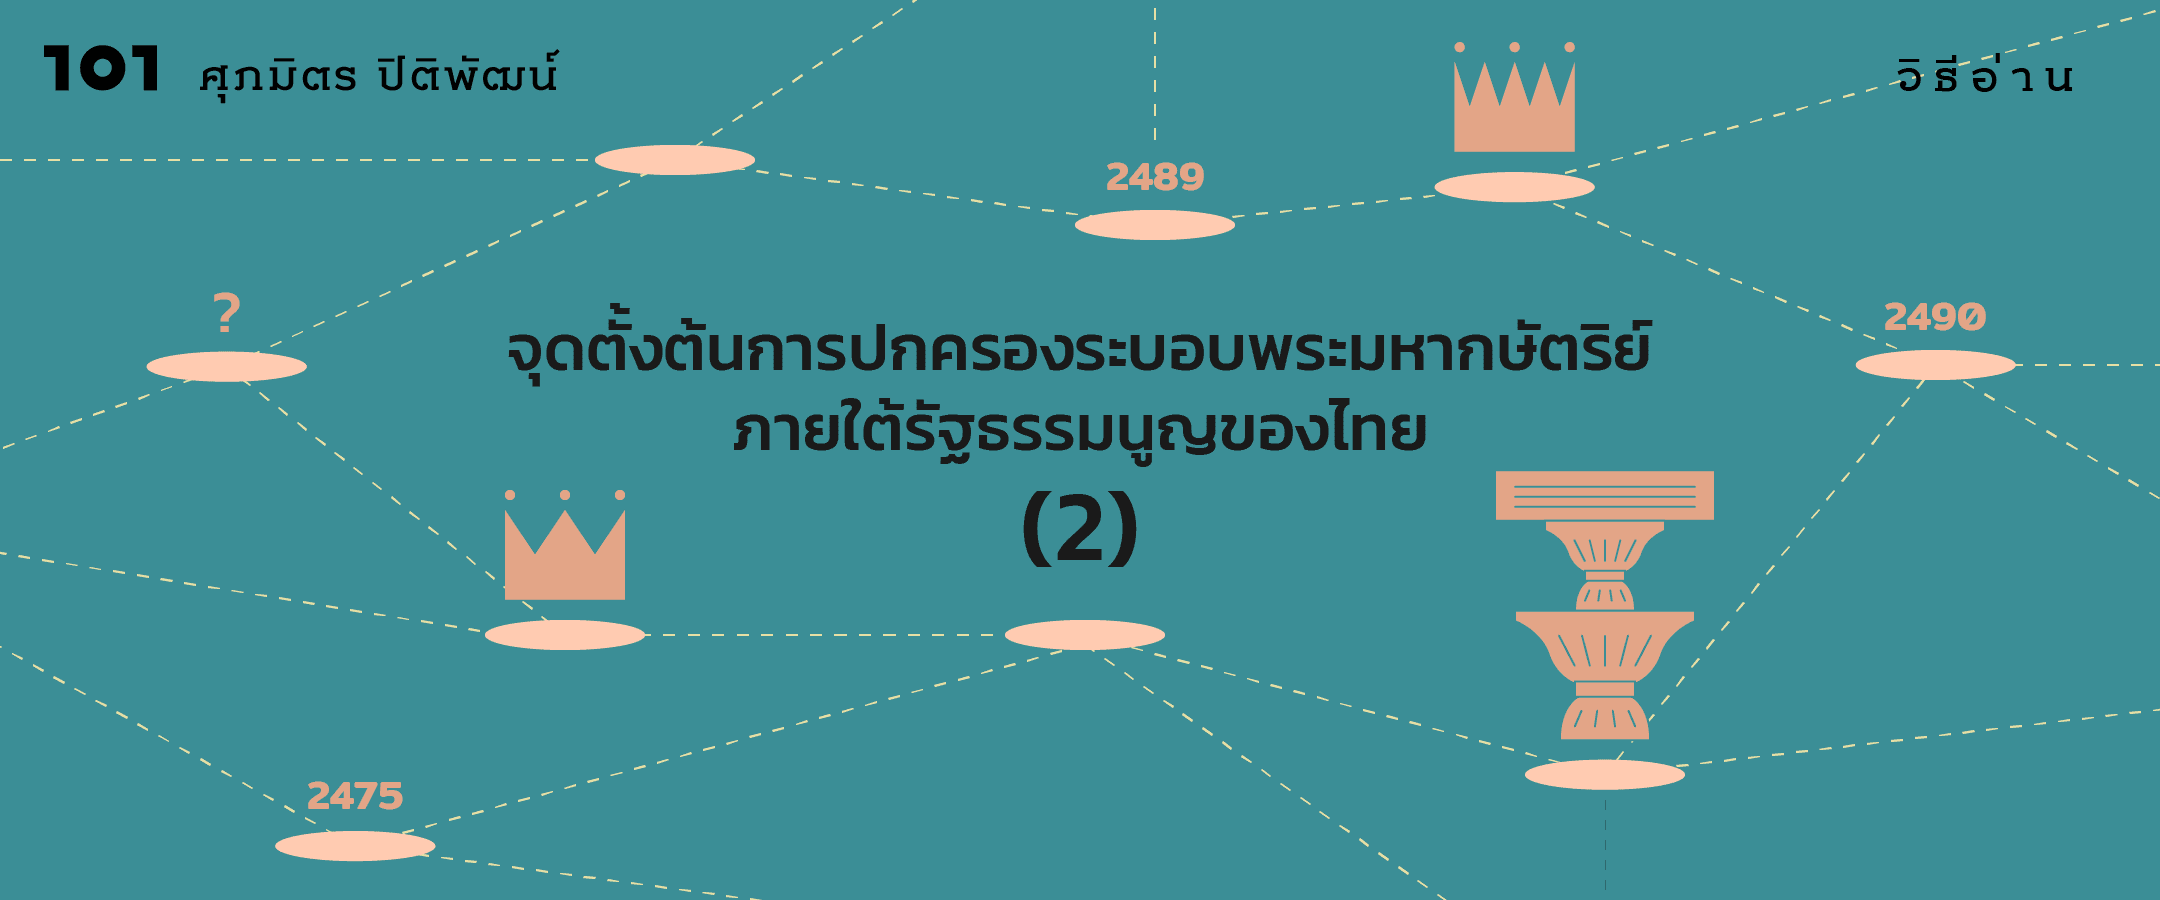 จุดตั้งต้นการปกครองระบอบพระมหากษัตริย์ภายใต้รัฐธรรมนูญของไทย (2)